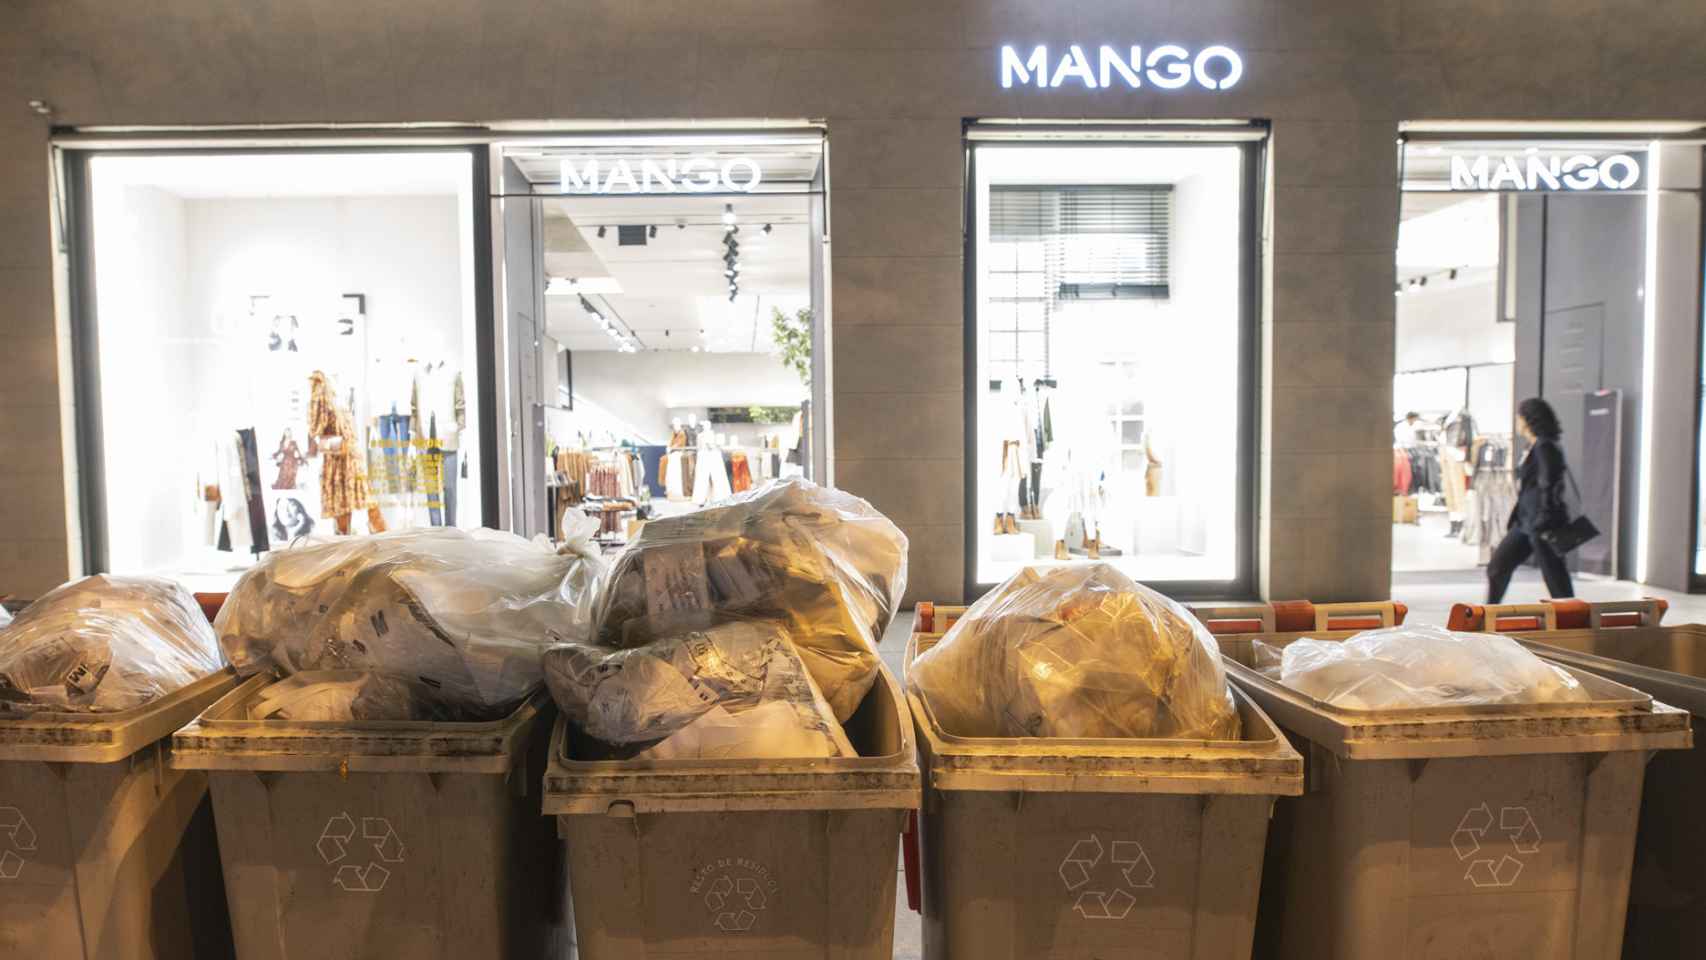 ≫ Servicio de Contenedores de Reciclaje en Madrid